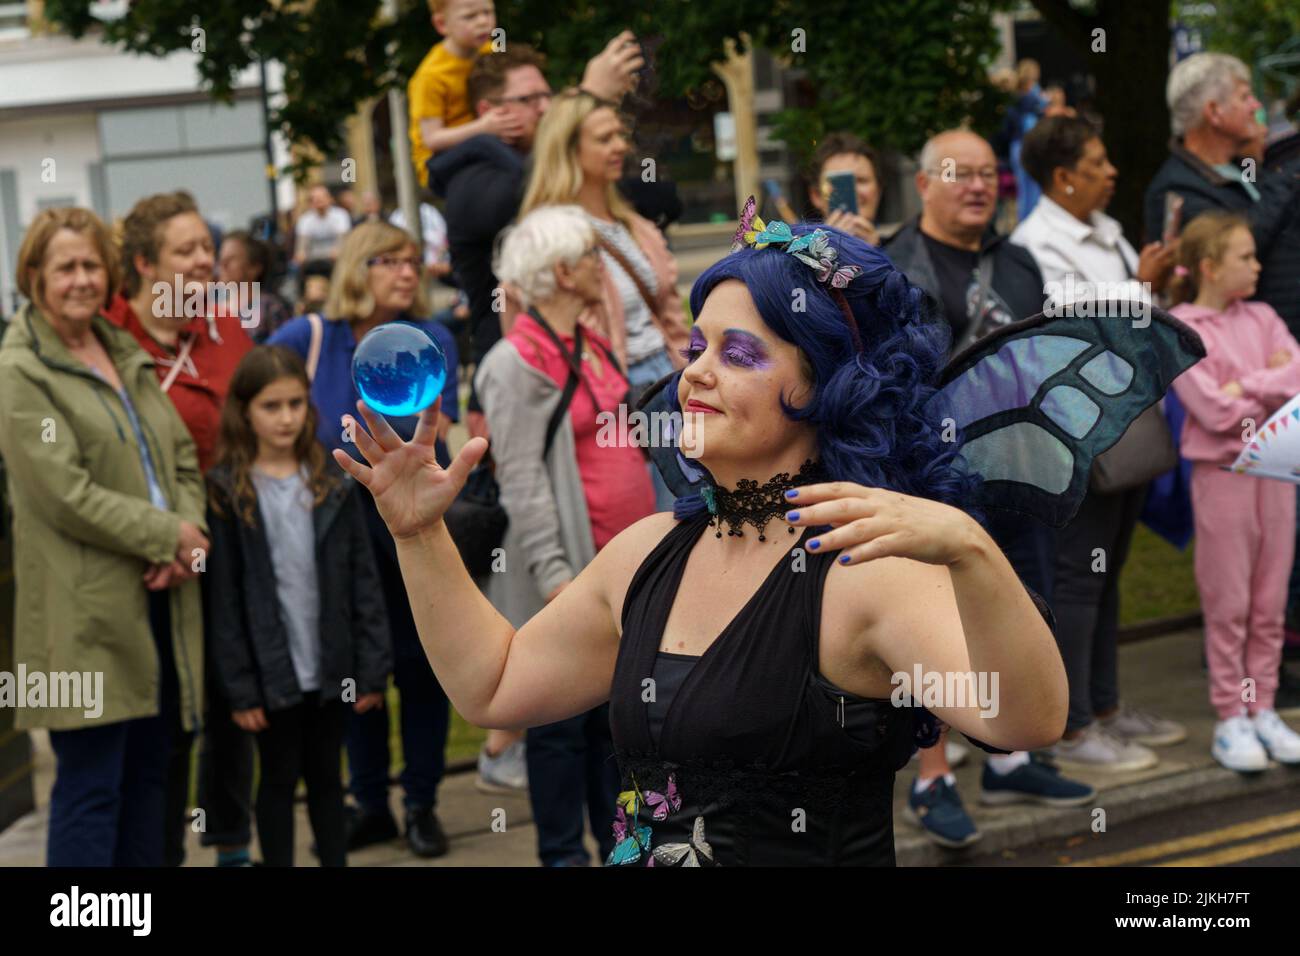 Leute, die die Harrogate Carnival Parade beobachten und ein Entertainer jongliert mit einer blauen Kristallkugel, Harrogate, North Yorkshire, Großbritannien Stockfoto